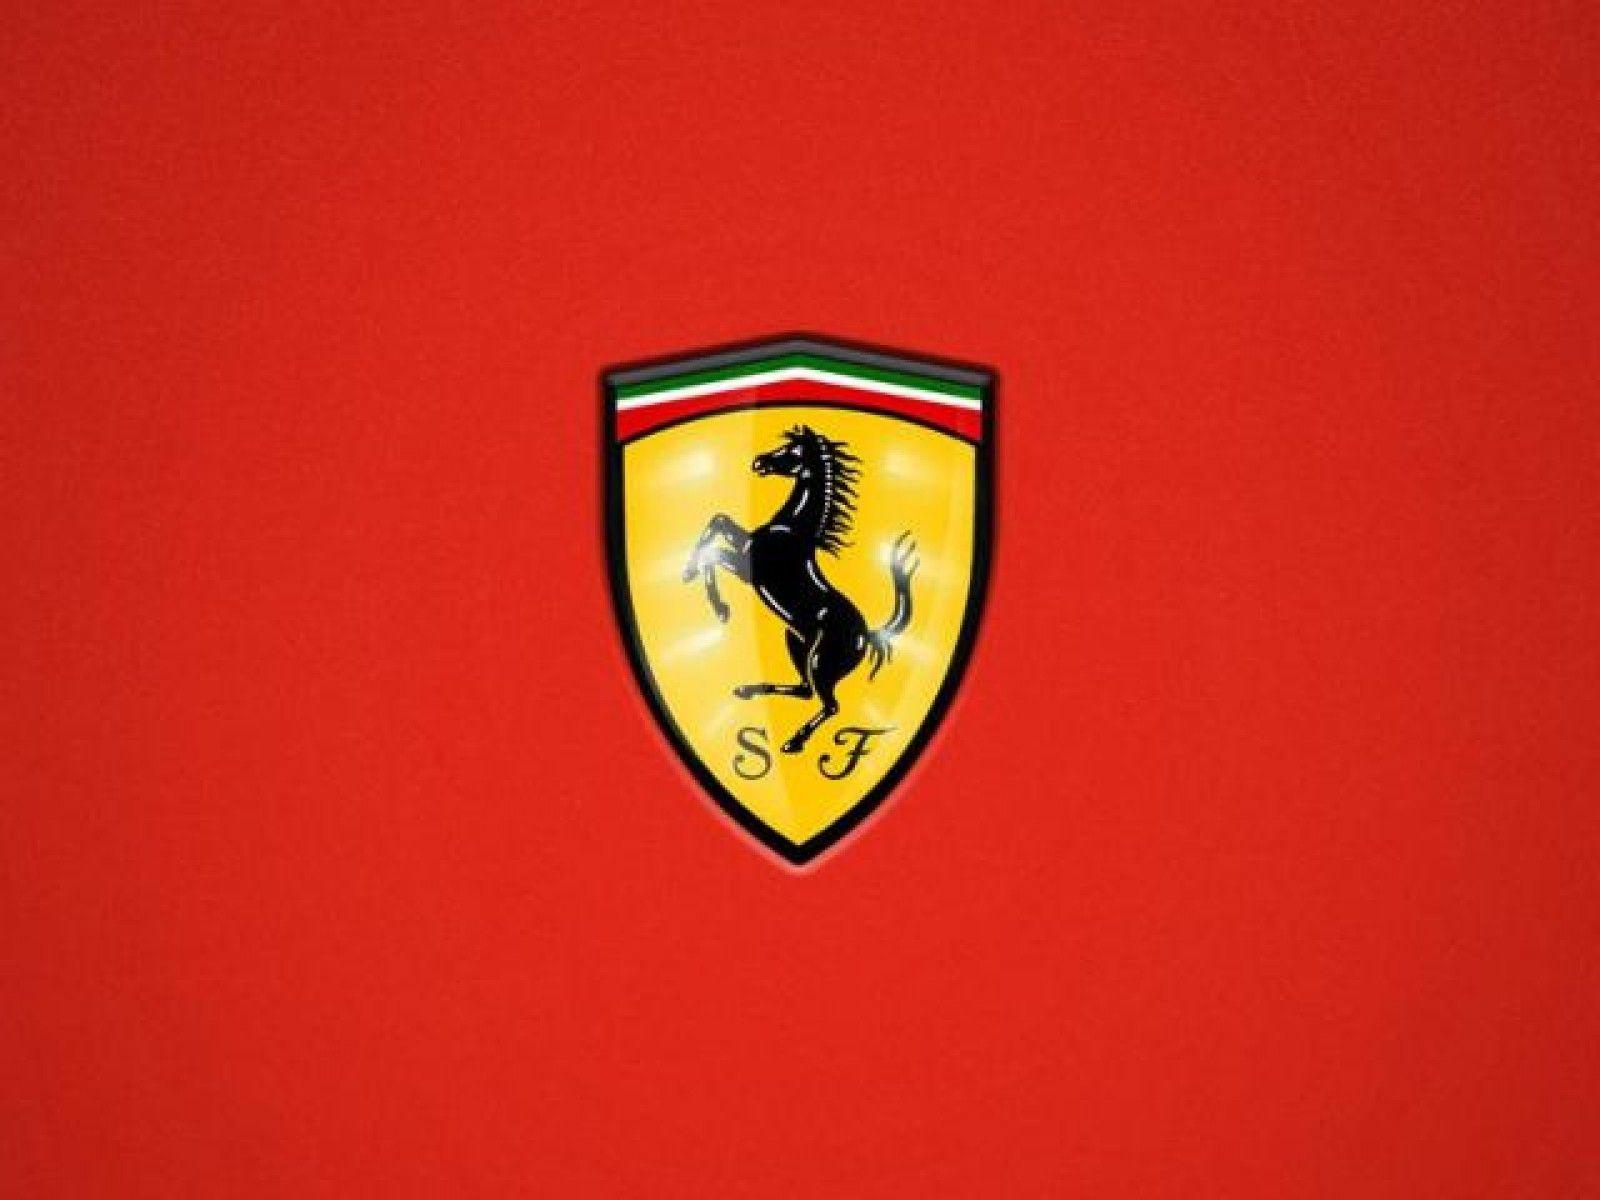 Ferrari Car Symbol Wallpaper Hd